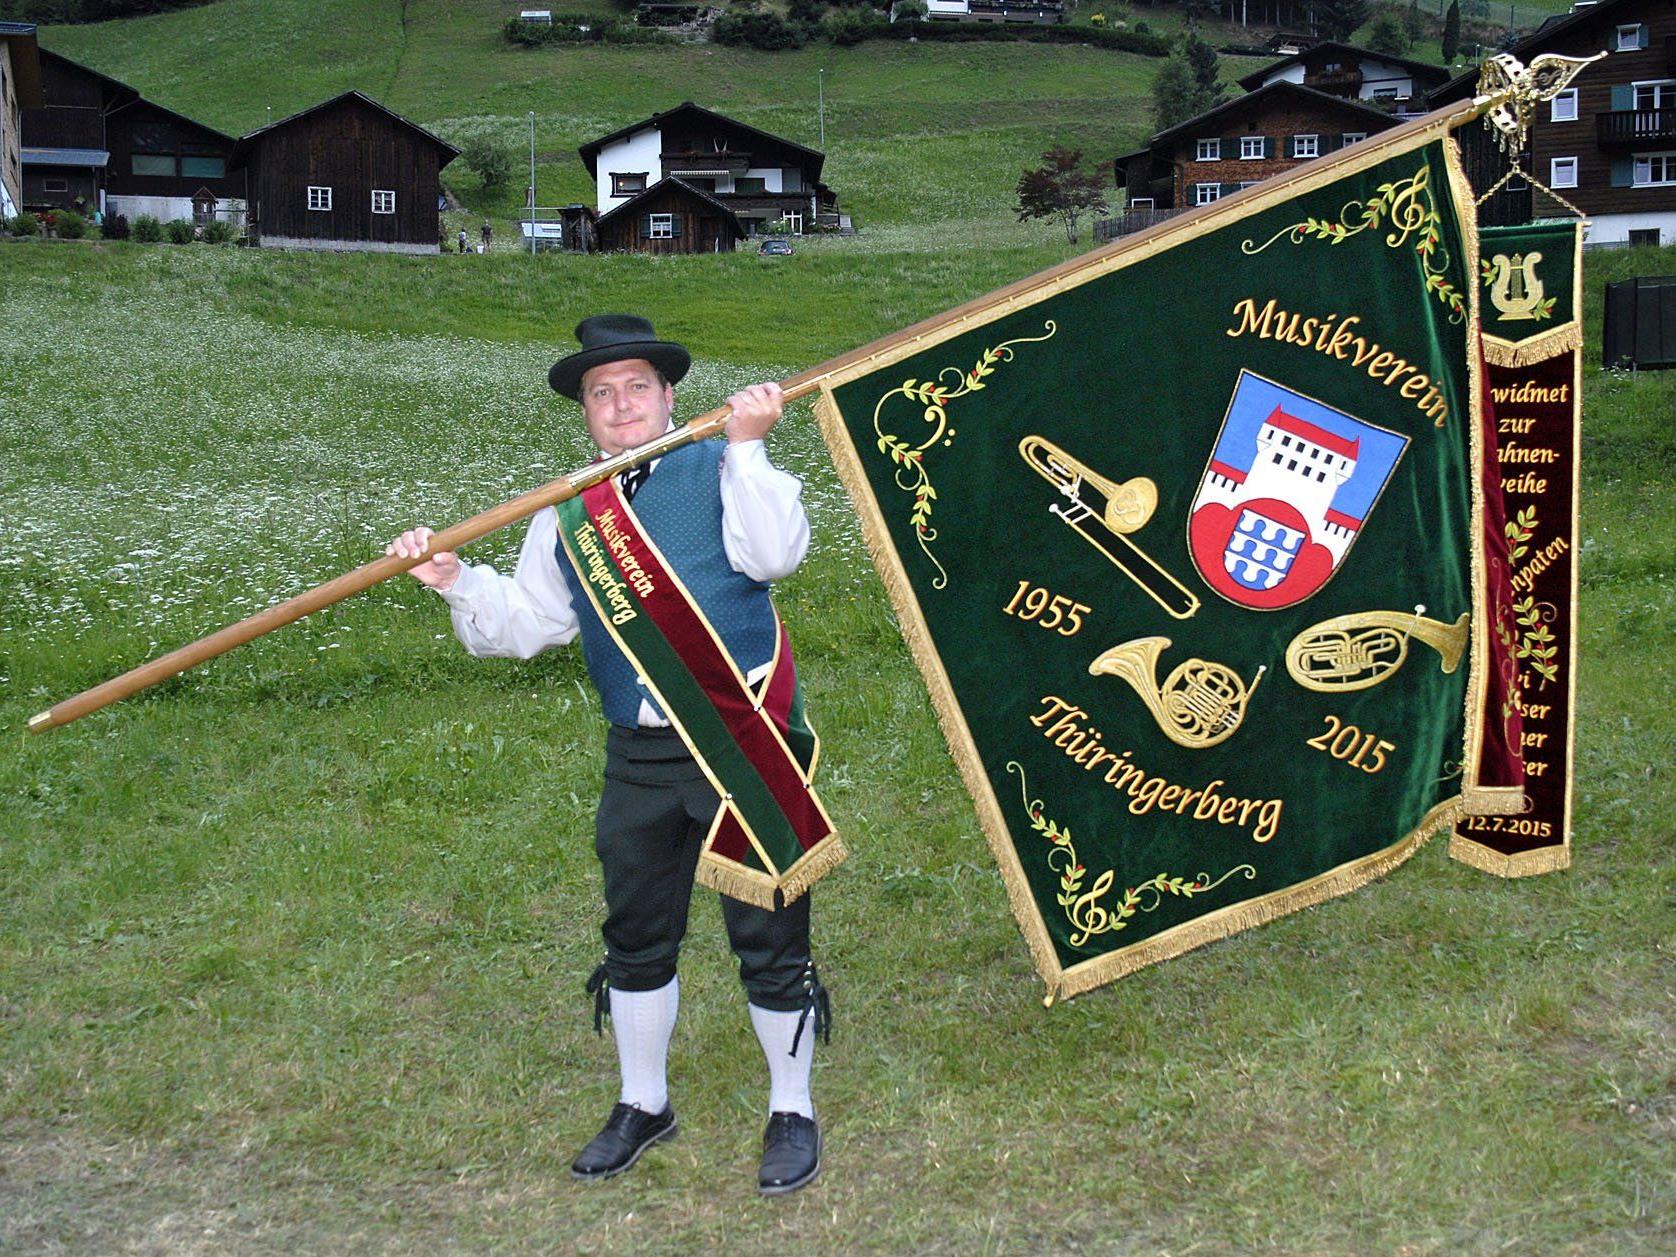 Der Fähnrich des Musikverein Thüringerberg, Rainer Dünser, mit der neuen Fahne beim Bezirksmusikfest im Silbertal